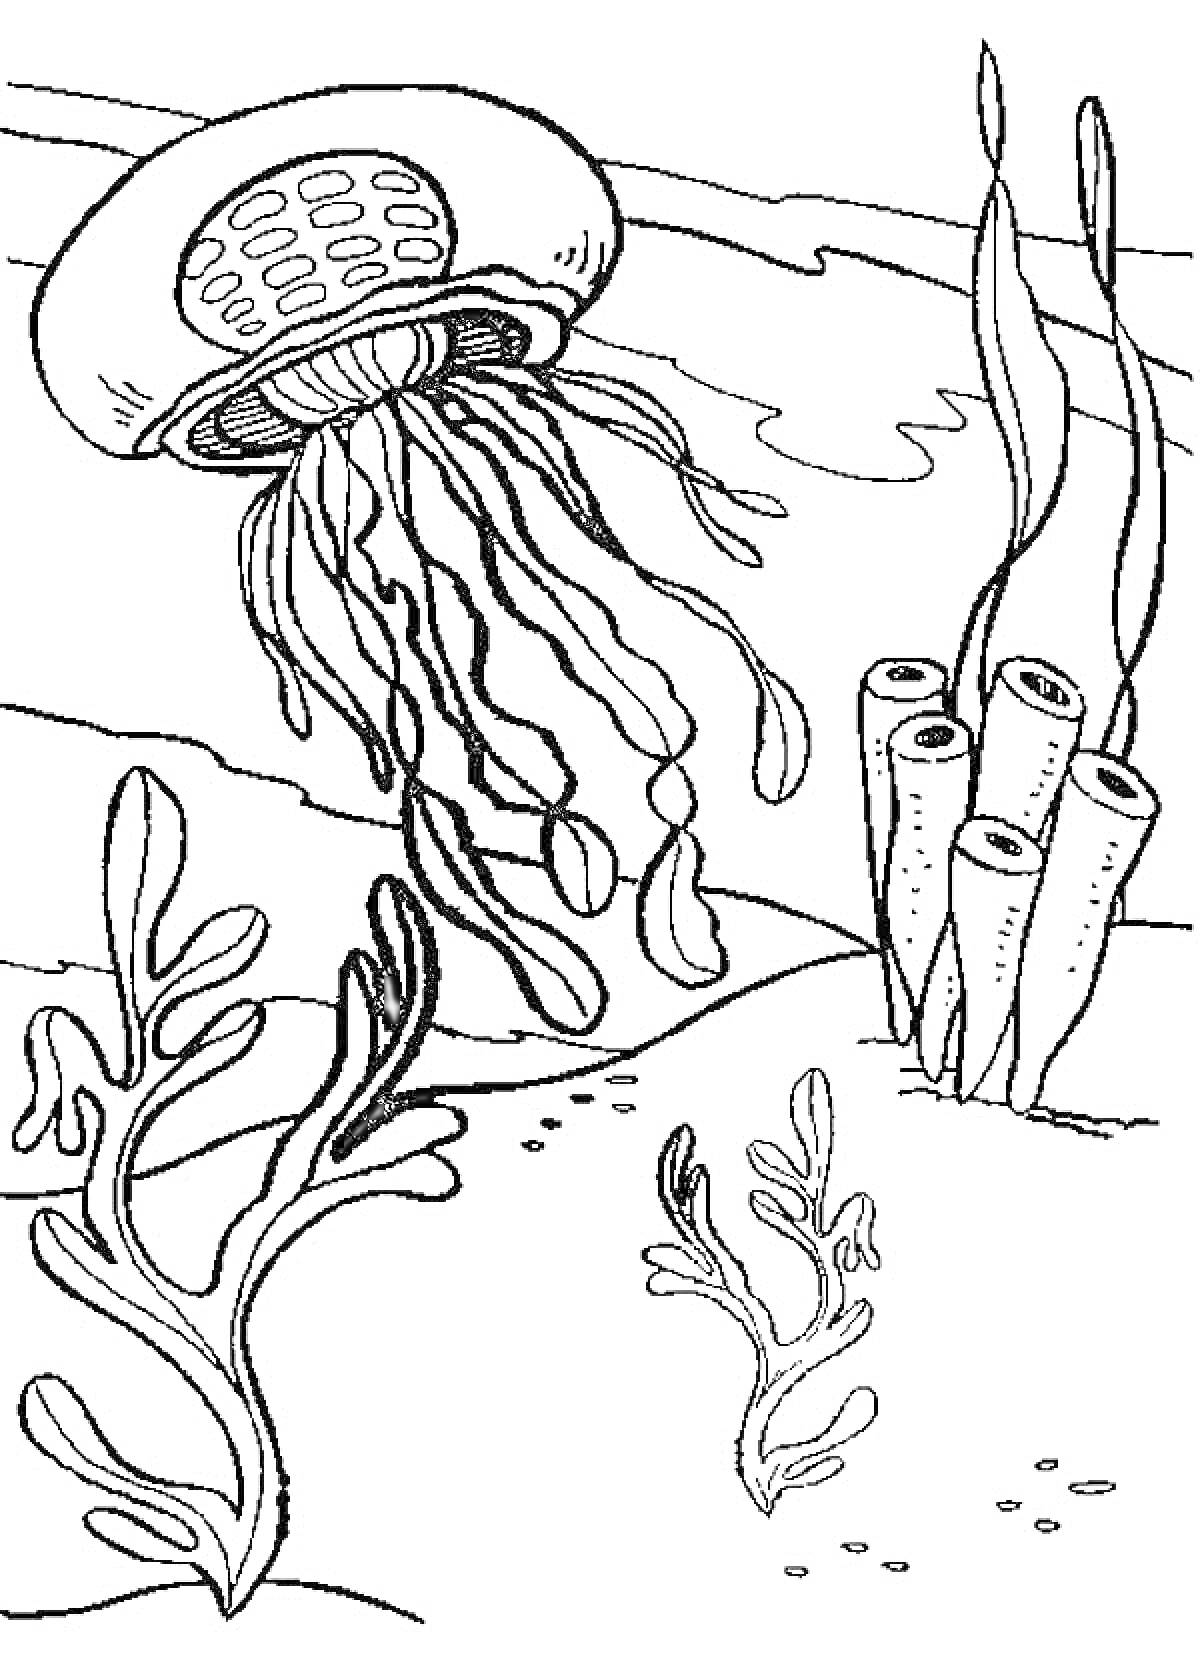 Медуза и водоросли на морском дне